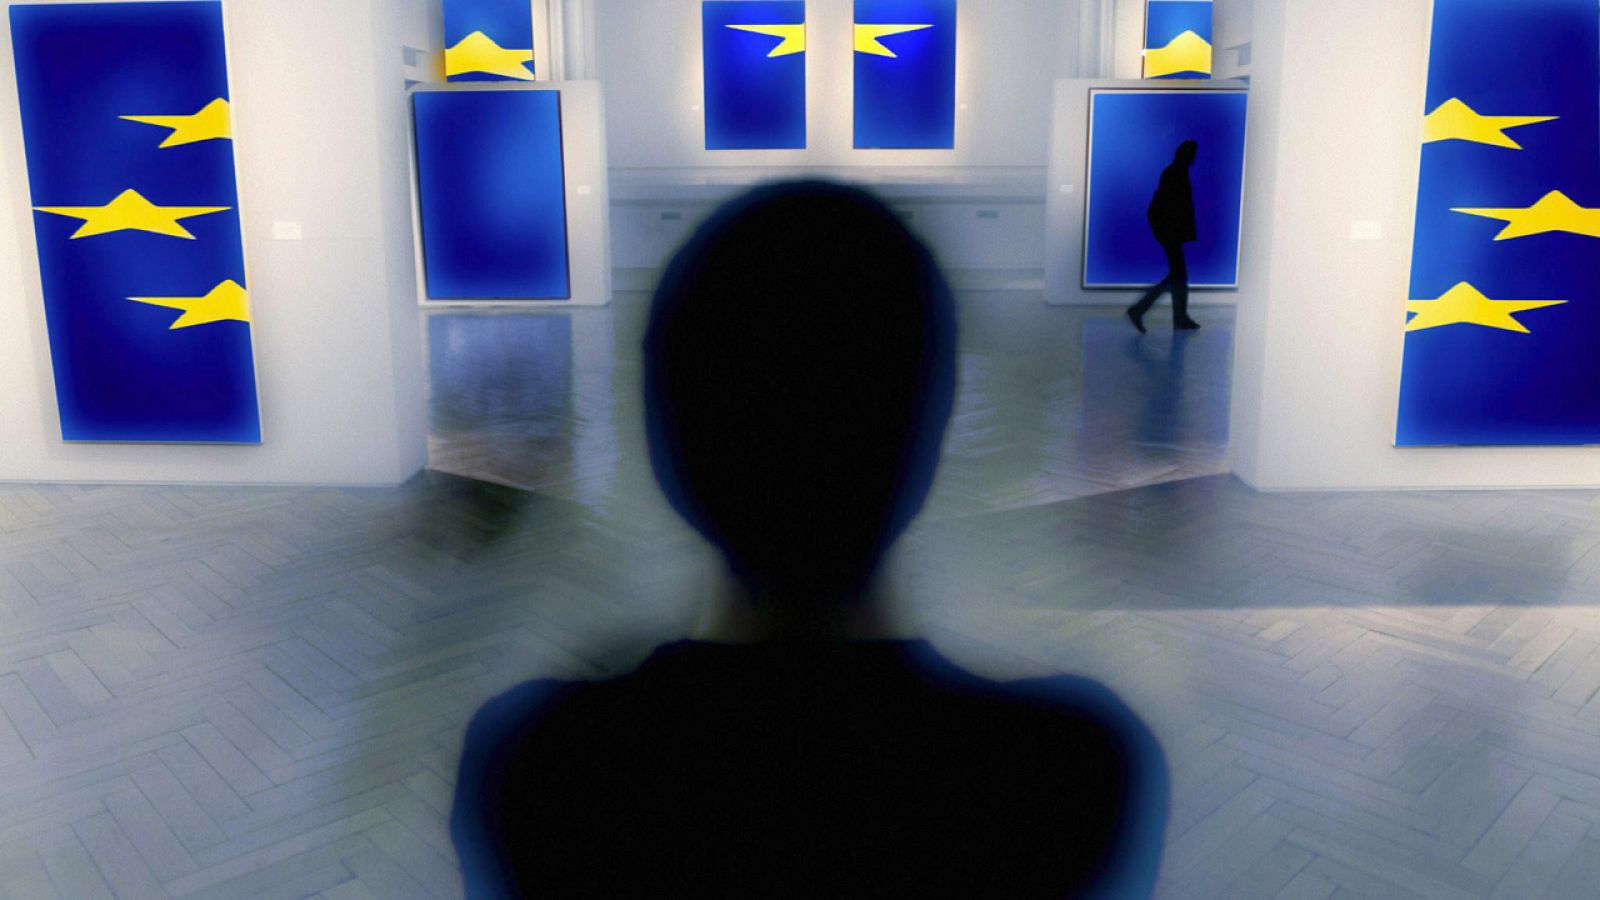 Exposición de arte inspirada en la bandera de la UE, en Bruselas (foto archivo)